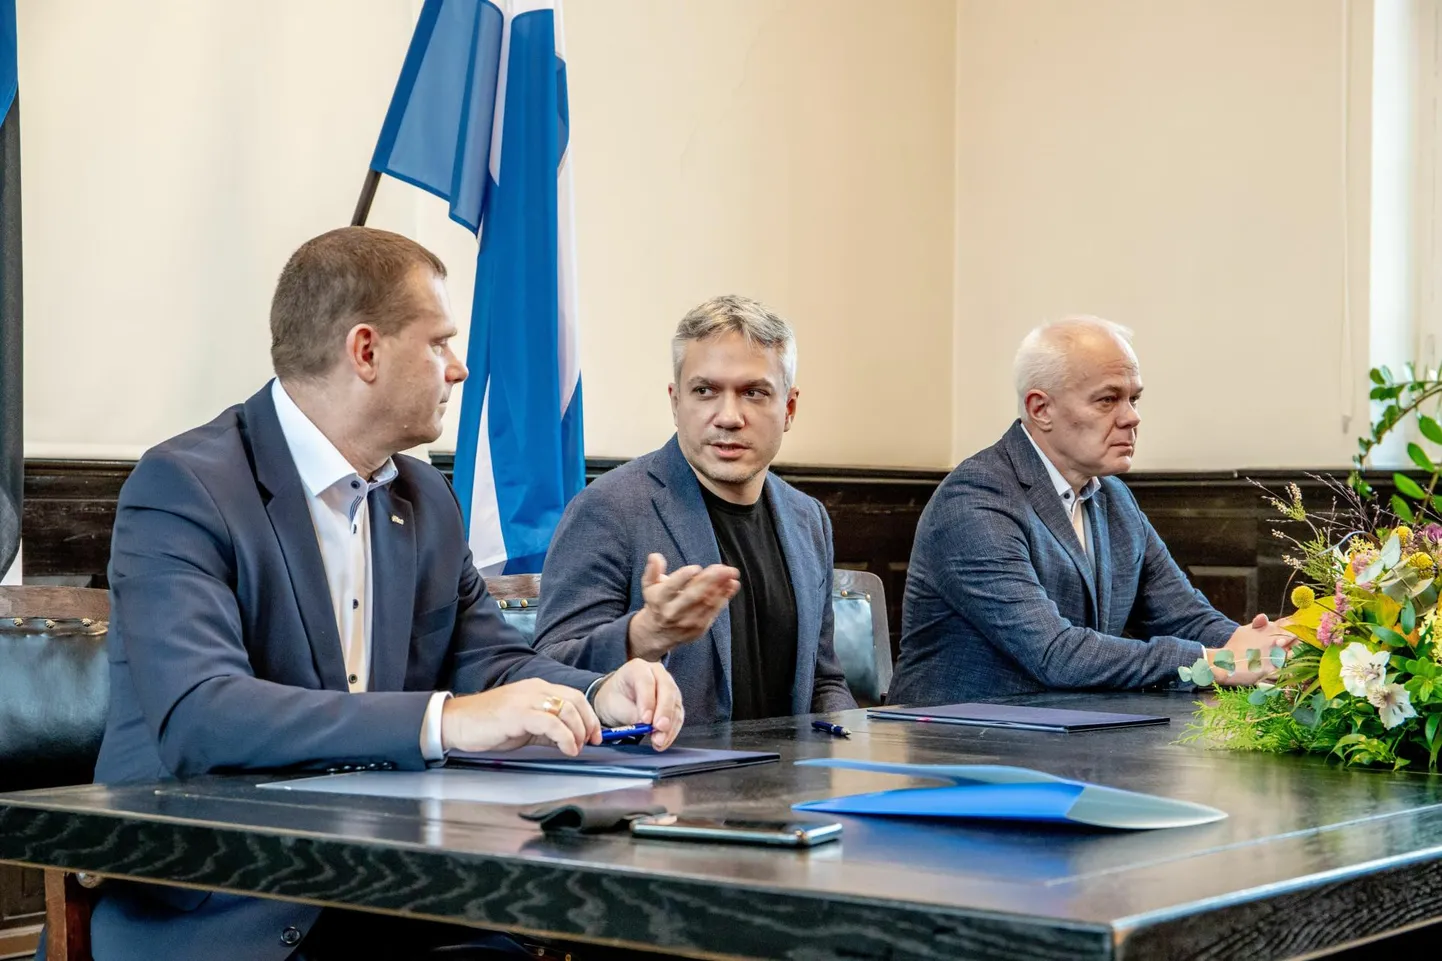 Valimisliidu Pärnu Ühendab, Keskerakonna ja Reformierakonna Pärnu linnavolikokku valitud esindajad allkirjastasid koalitsioonilepingu mullu 22. novembril. 